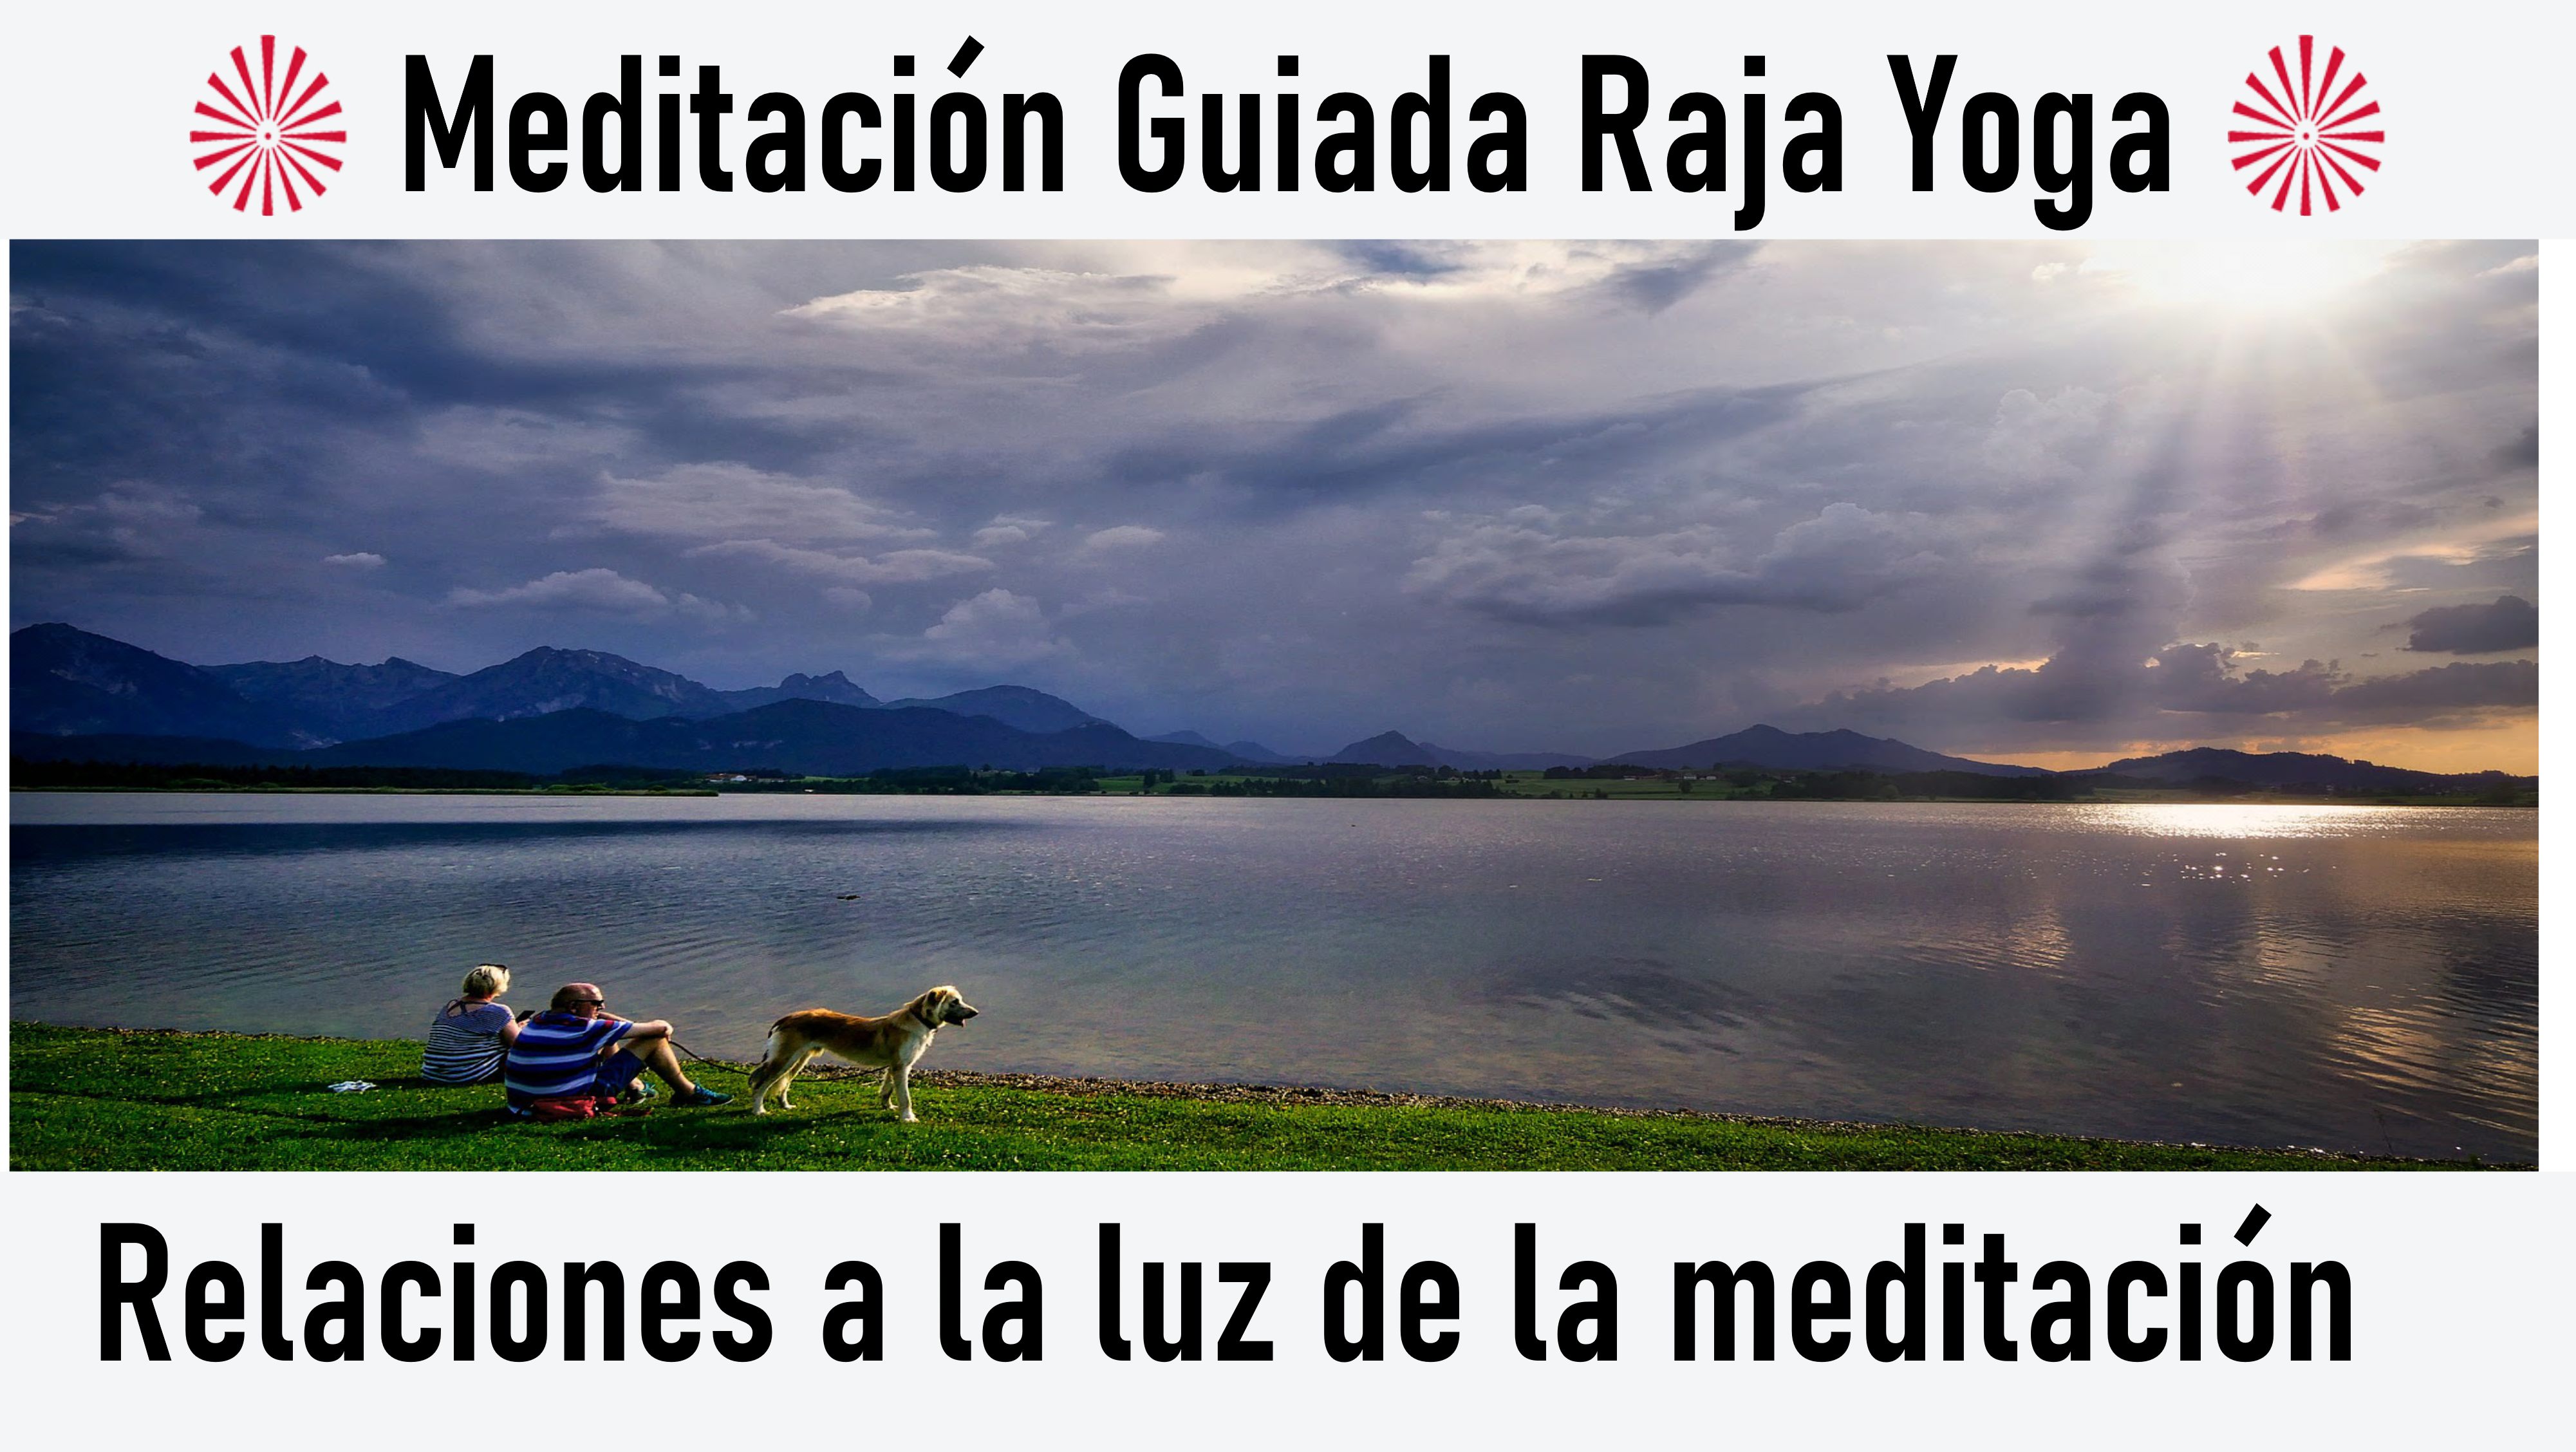 Meditación Raja Yoga: Relaciones a la luz de la meditación (6 Julio 2020) On-line desde Madrid